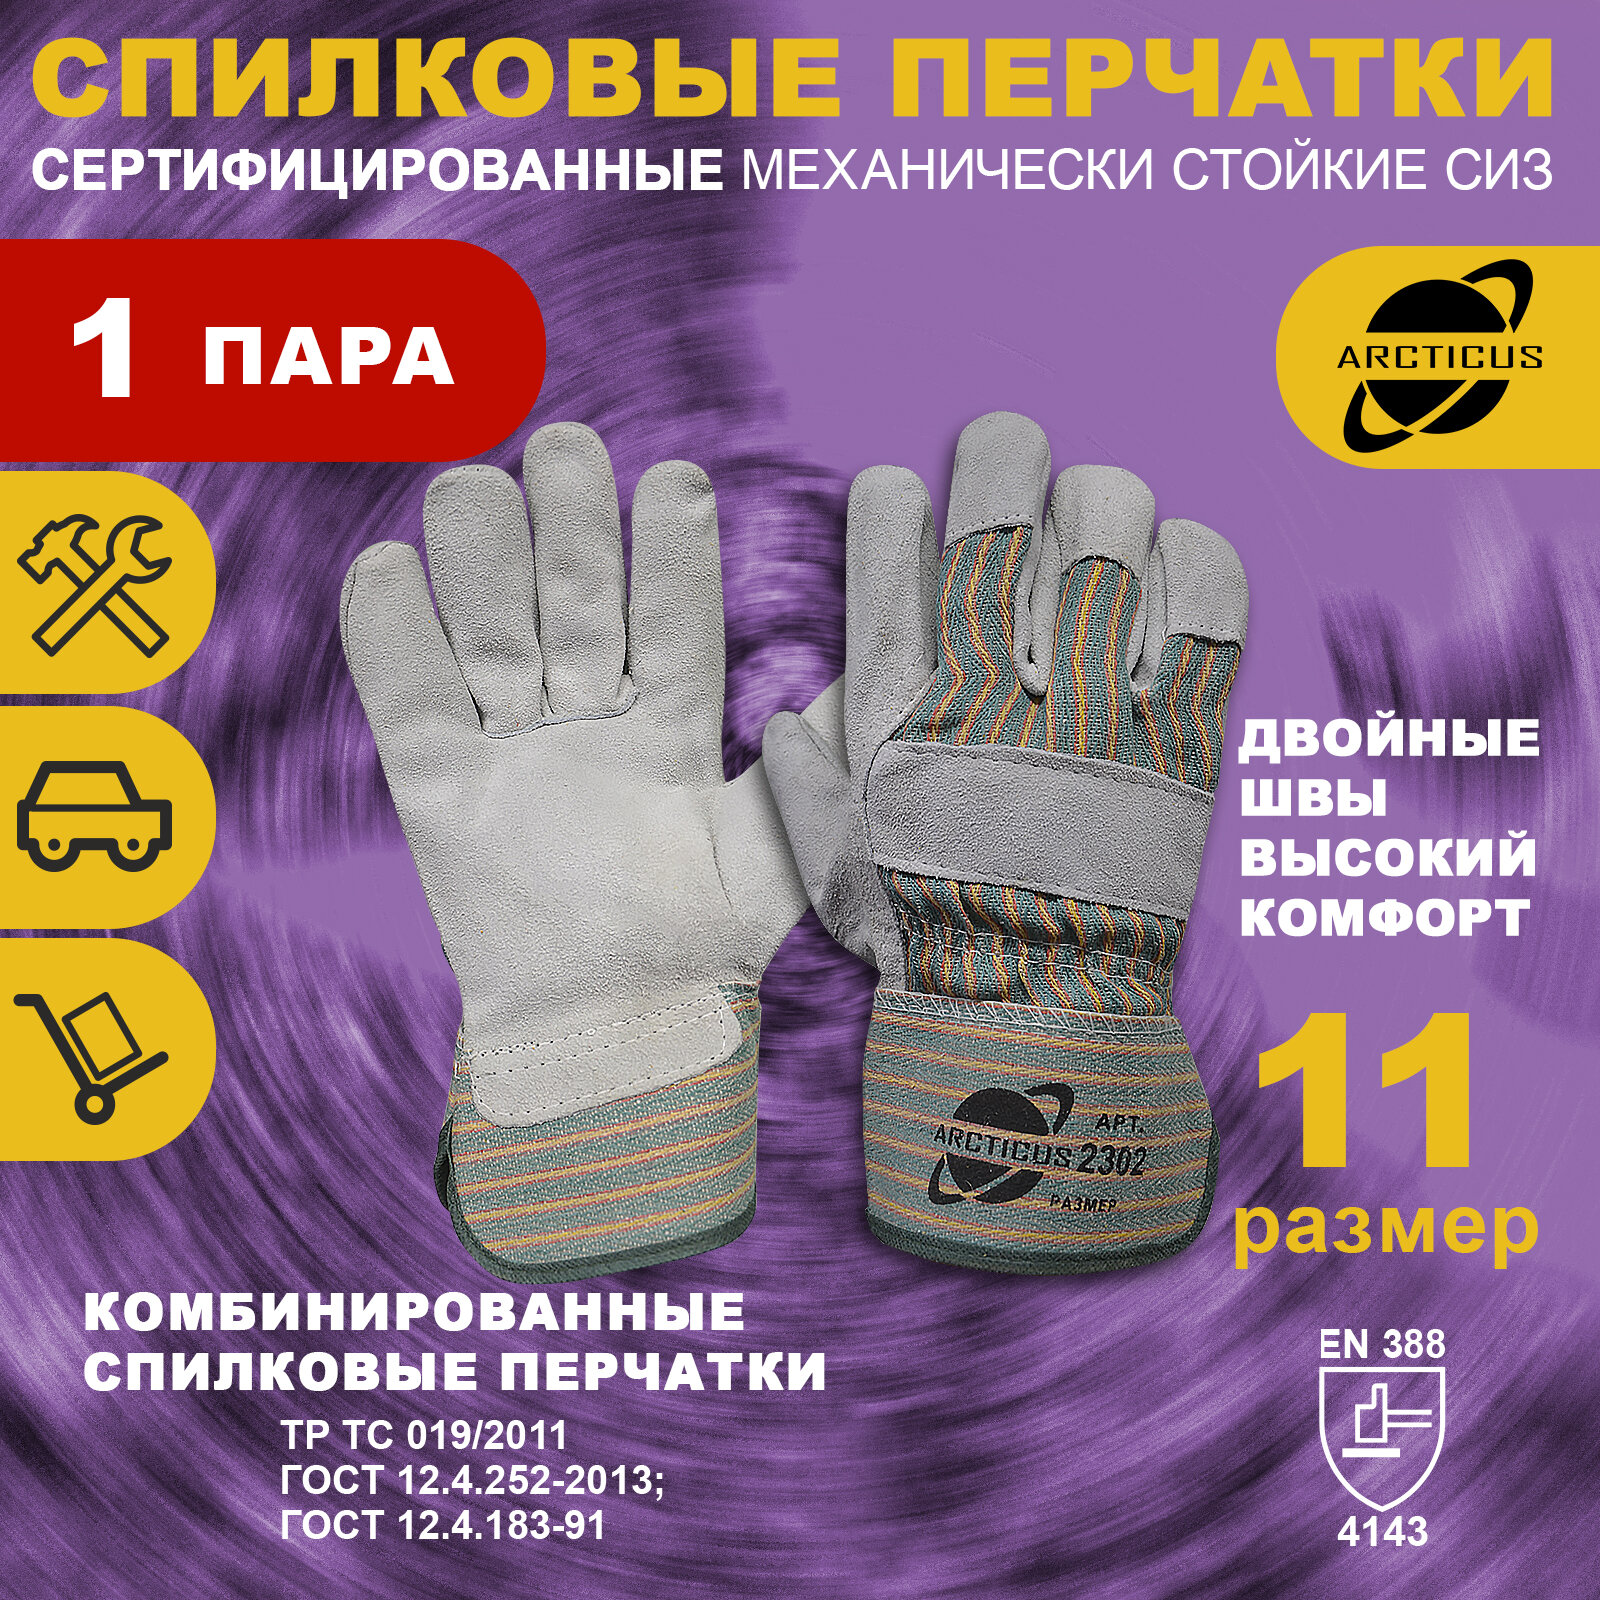 Спилковые перчатки ARCTICUS, арт. 2302, размер 11